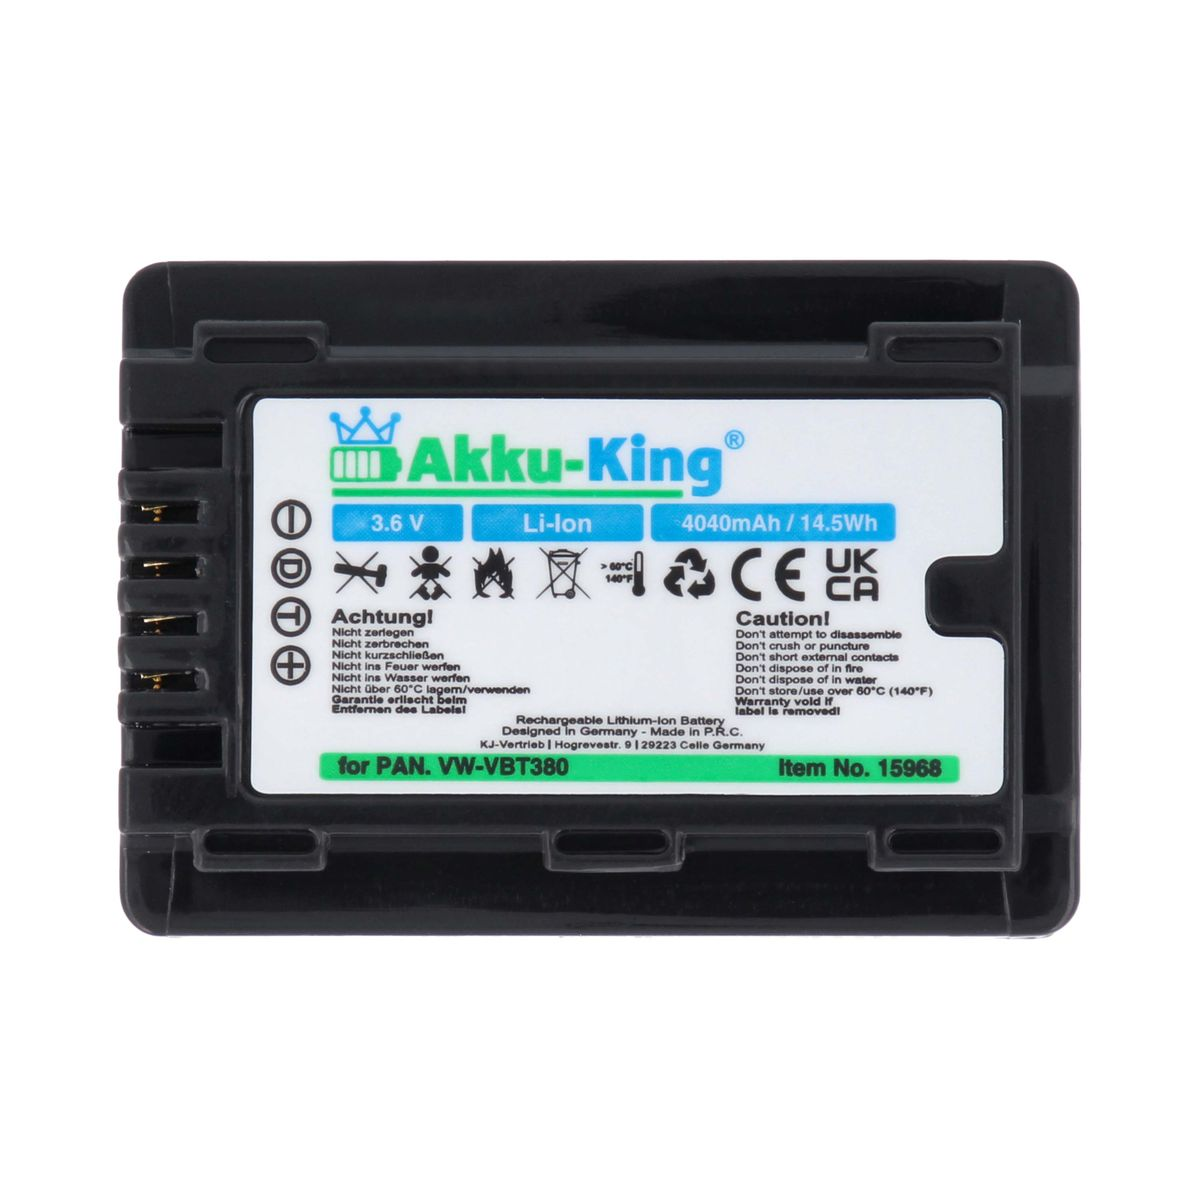 AKKU-KING Akku Panasonic Kamera-Akku, 4040mAh Volt, kompatibel Li-Ion mit 3.6 VW-VBT380